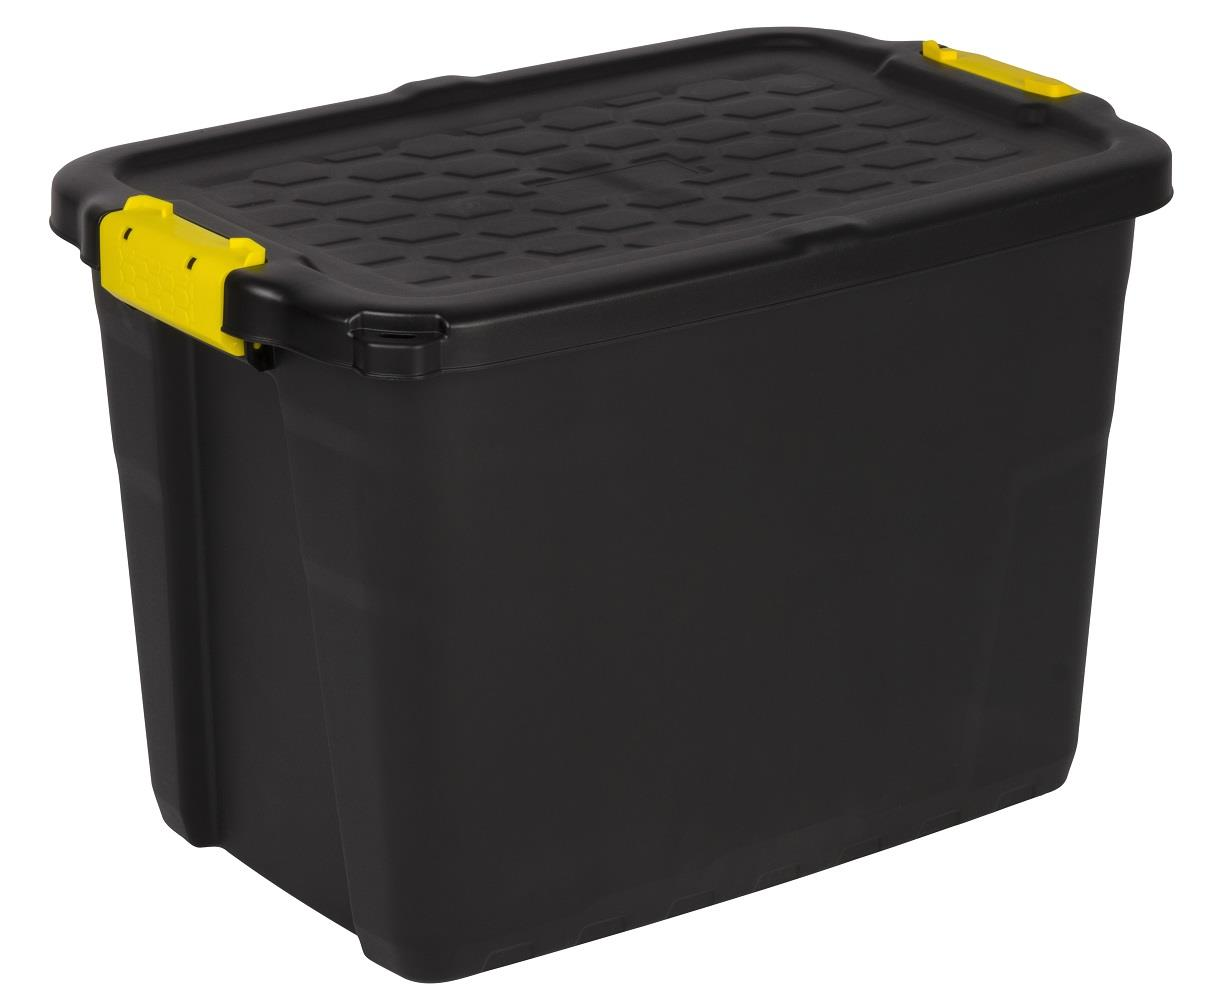 TOUGH BOX 60 Robuste Lagerbox aus Kunststoff (PP). Mit schwarzem Korpus und zwei seitlichen Griffen zum Klippen in Gelb.